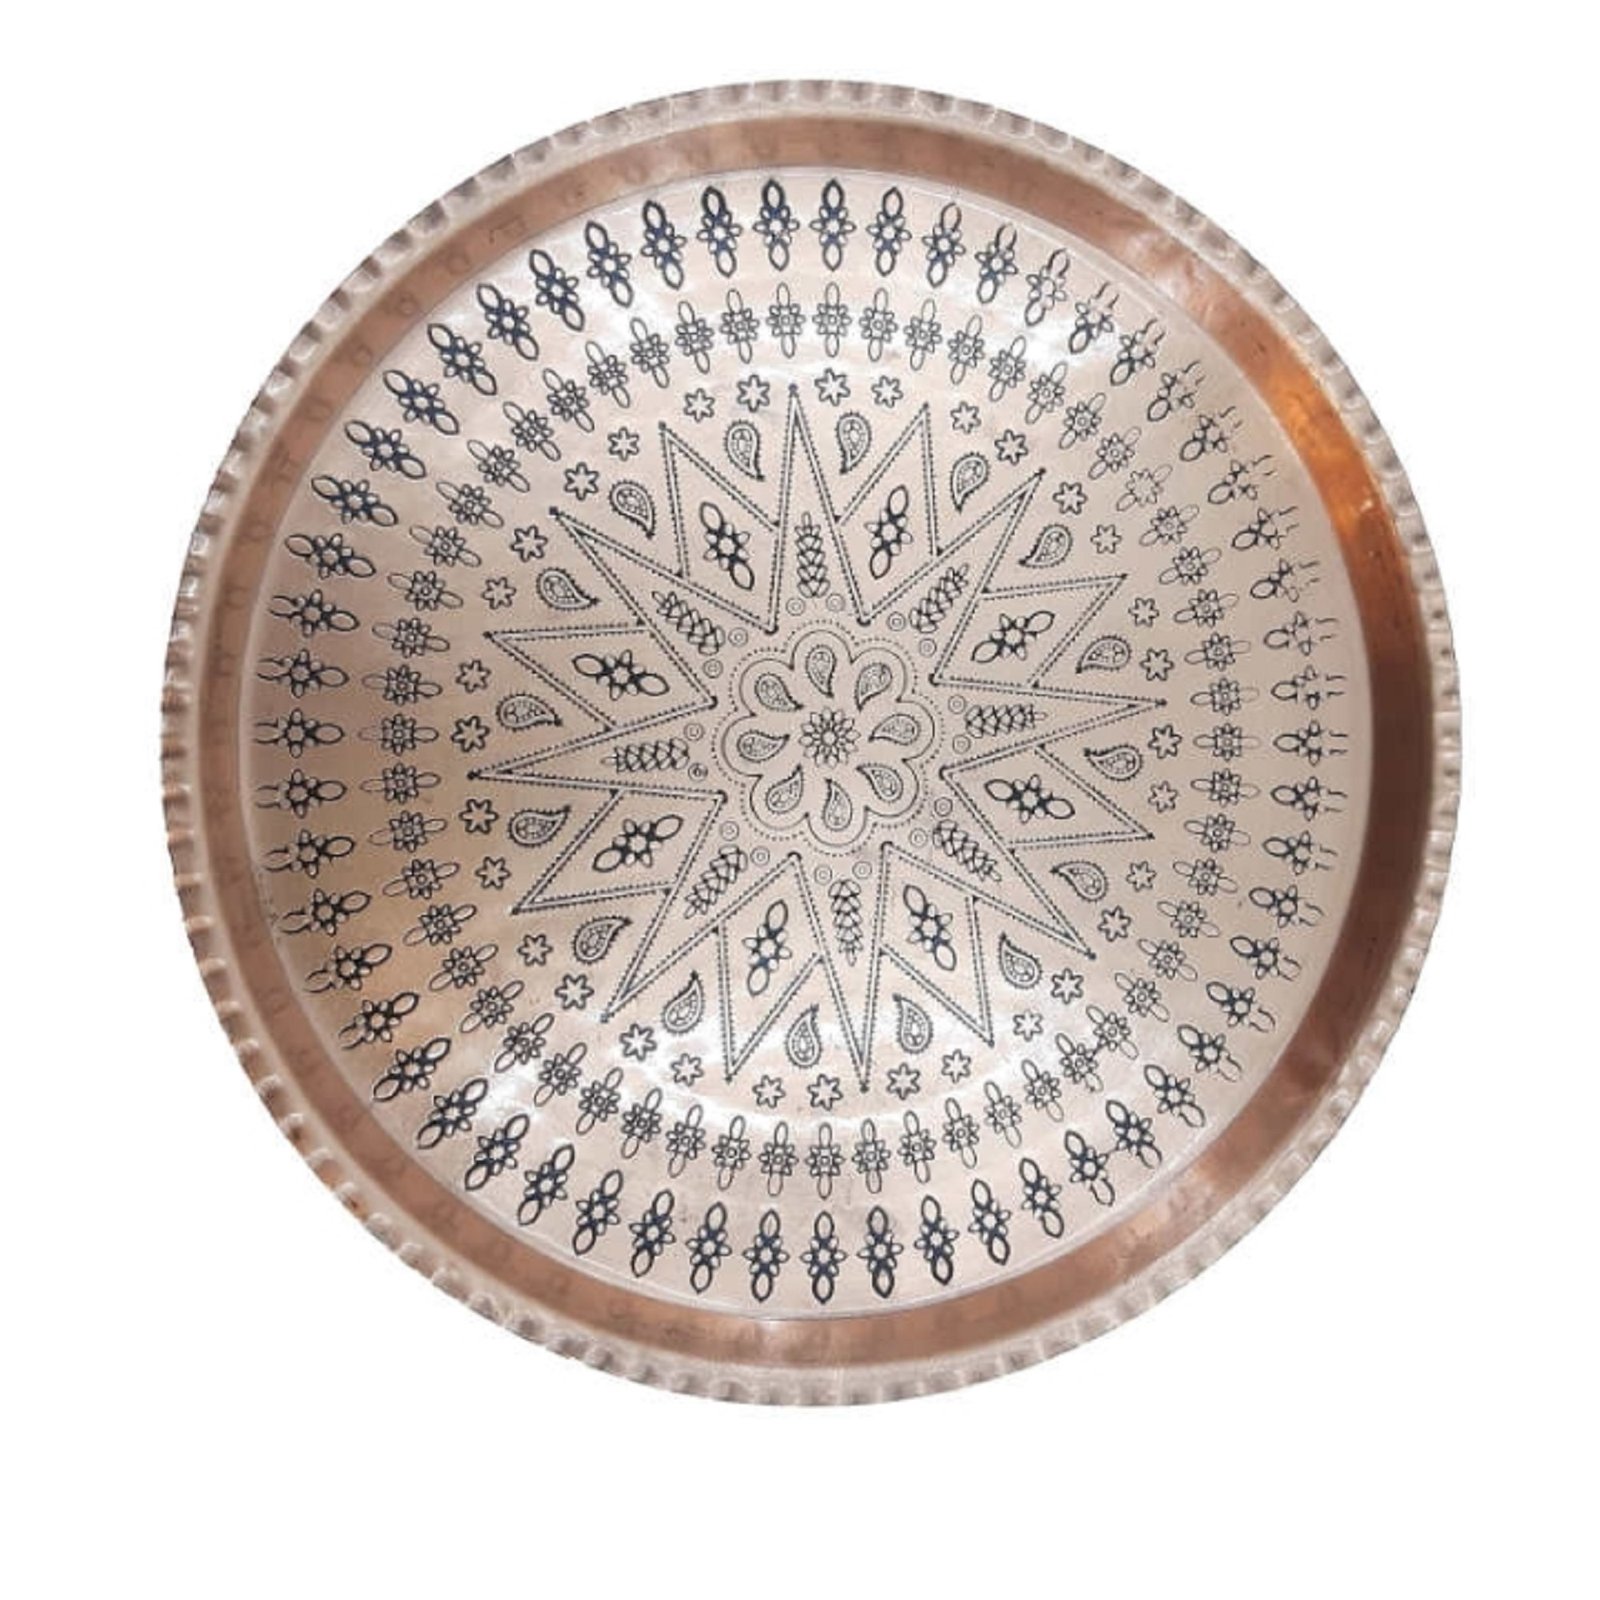 Handicraft Copper tray round model code 350-6,copper glasess price,copper handicraft price